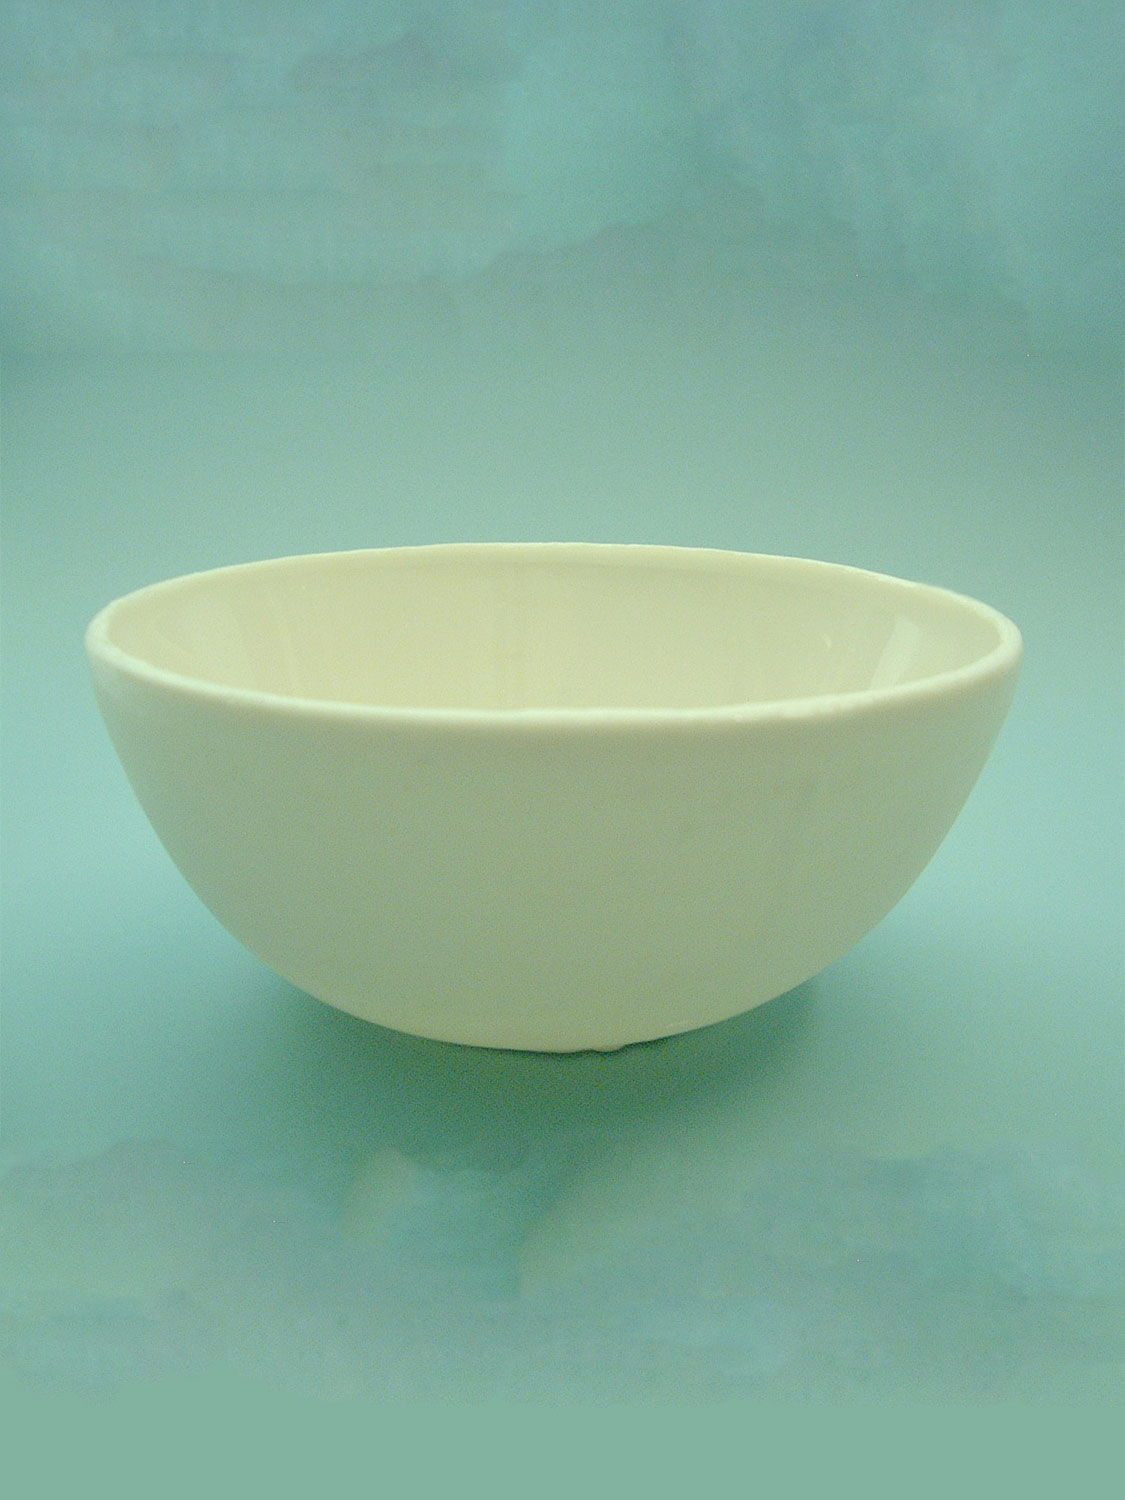 Sugar glass large porcelain bowl. Saucer, size 11.5 cm x ø 24.5 cm.